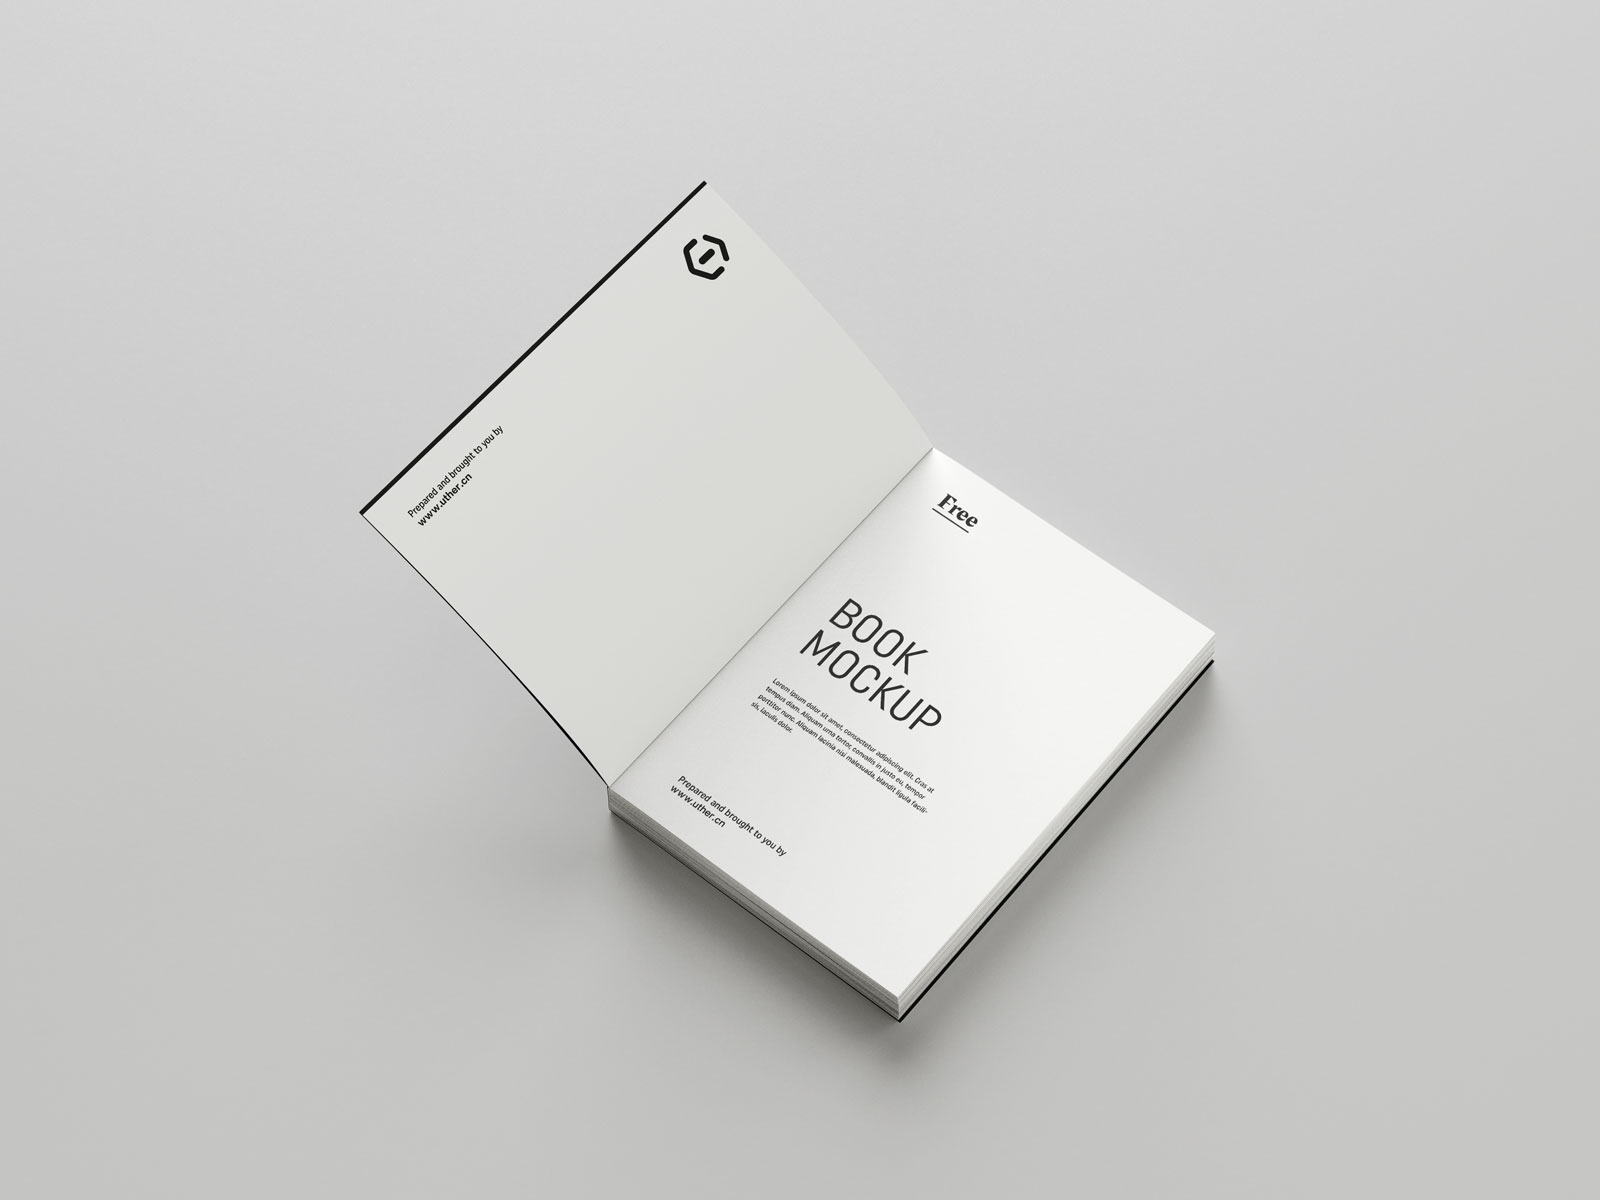 简约大气平装书籍设计扉页展示提案贴图PSD样机模版book mockup